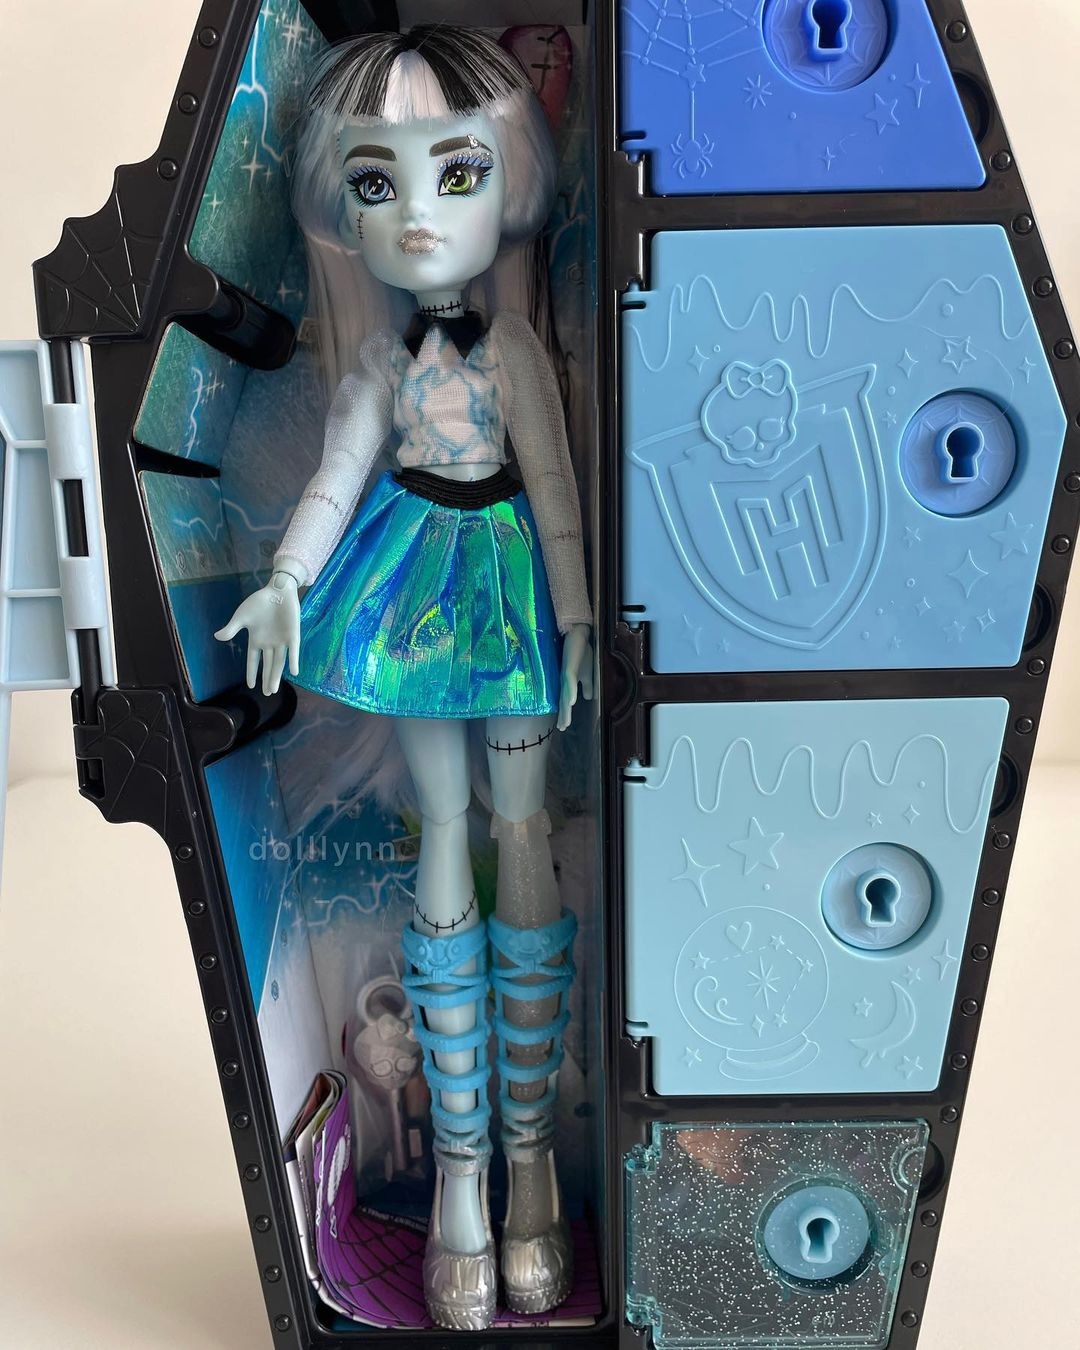 Monster High Doll, Frankie Stein, Skulltimate Secrets